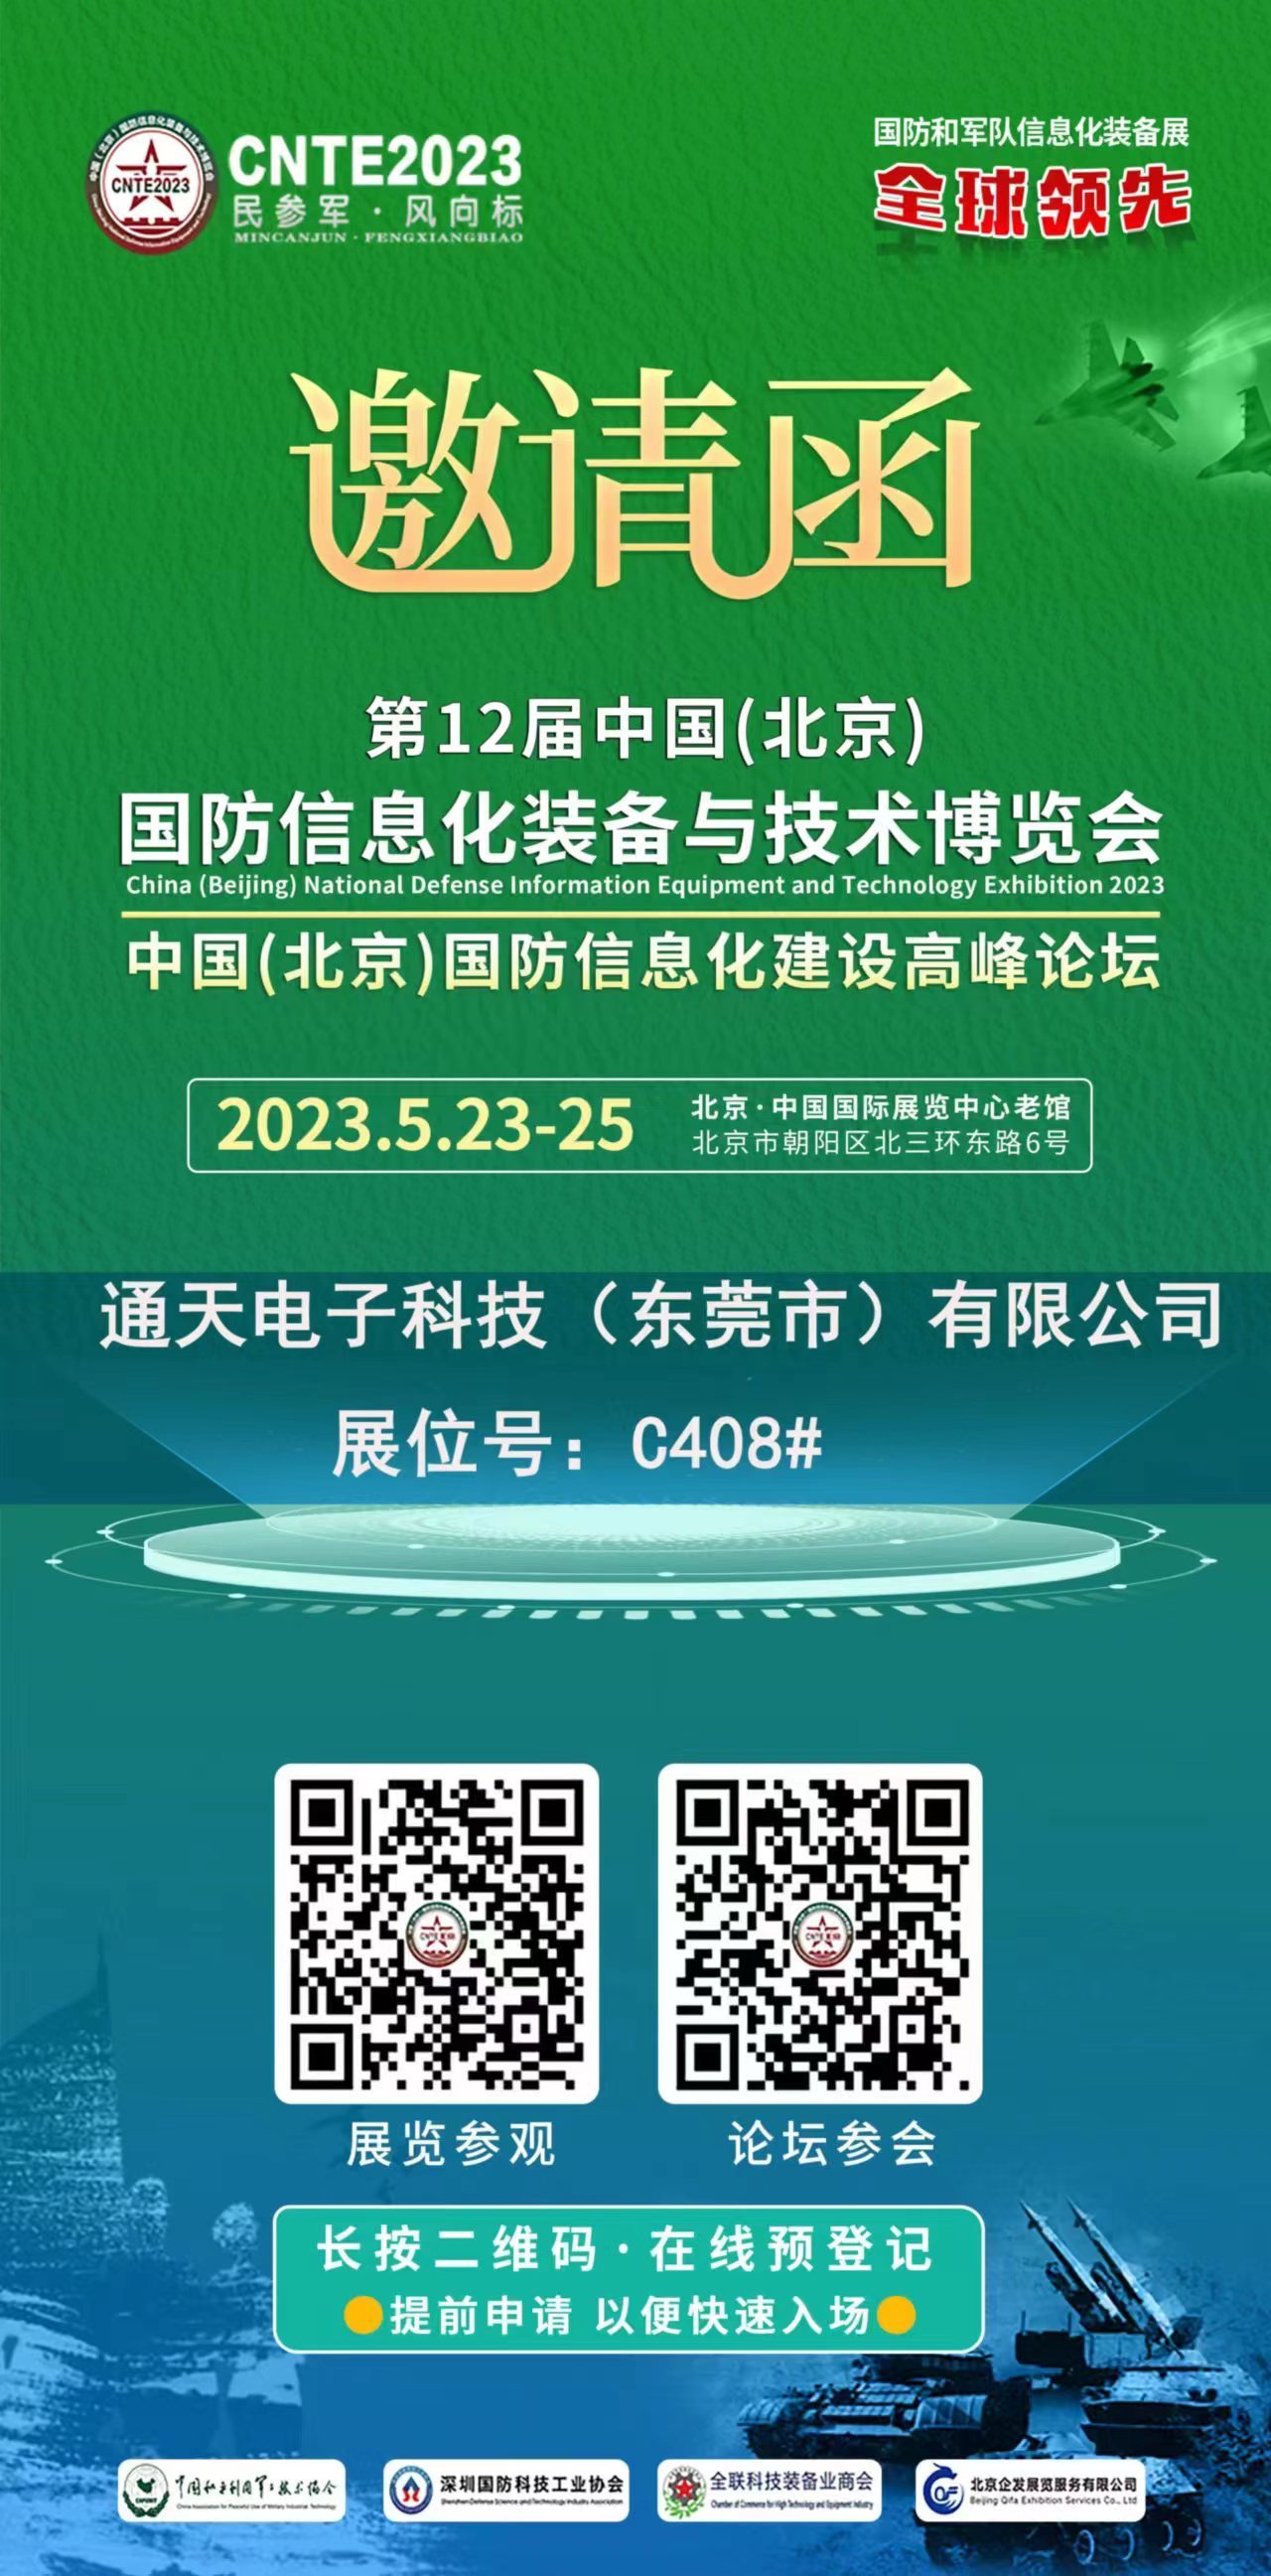 民参军·风向标  国防和军队信息化装备展 第12届中国(北京) 国防信息化装备与技术博览会